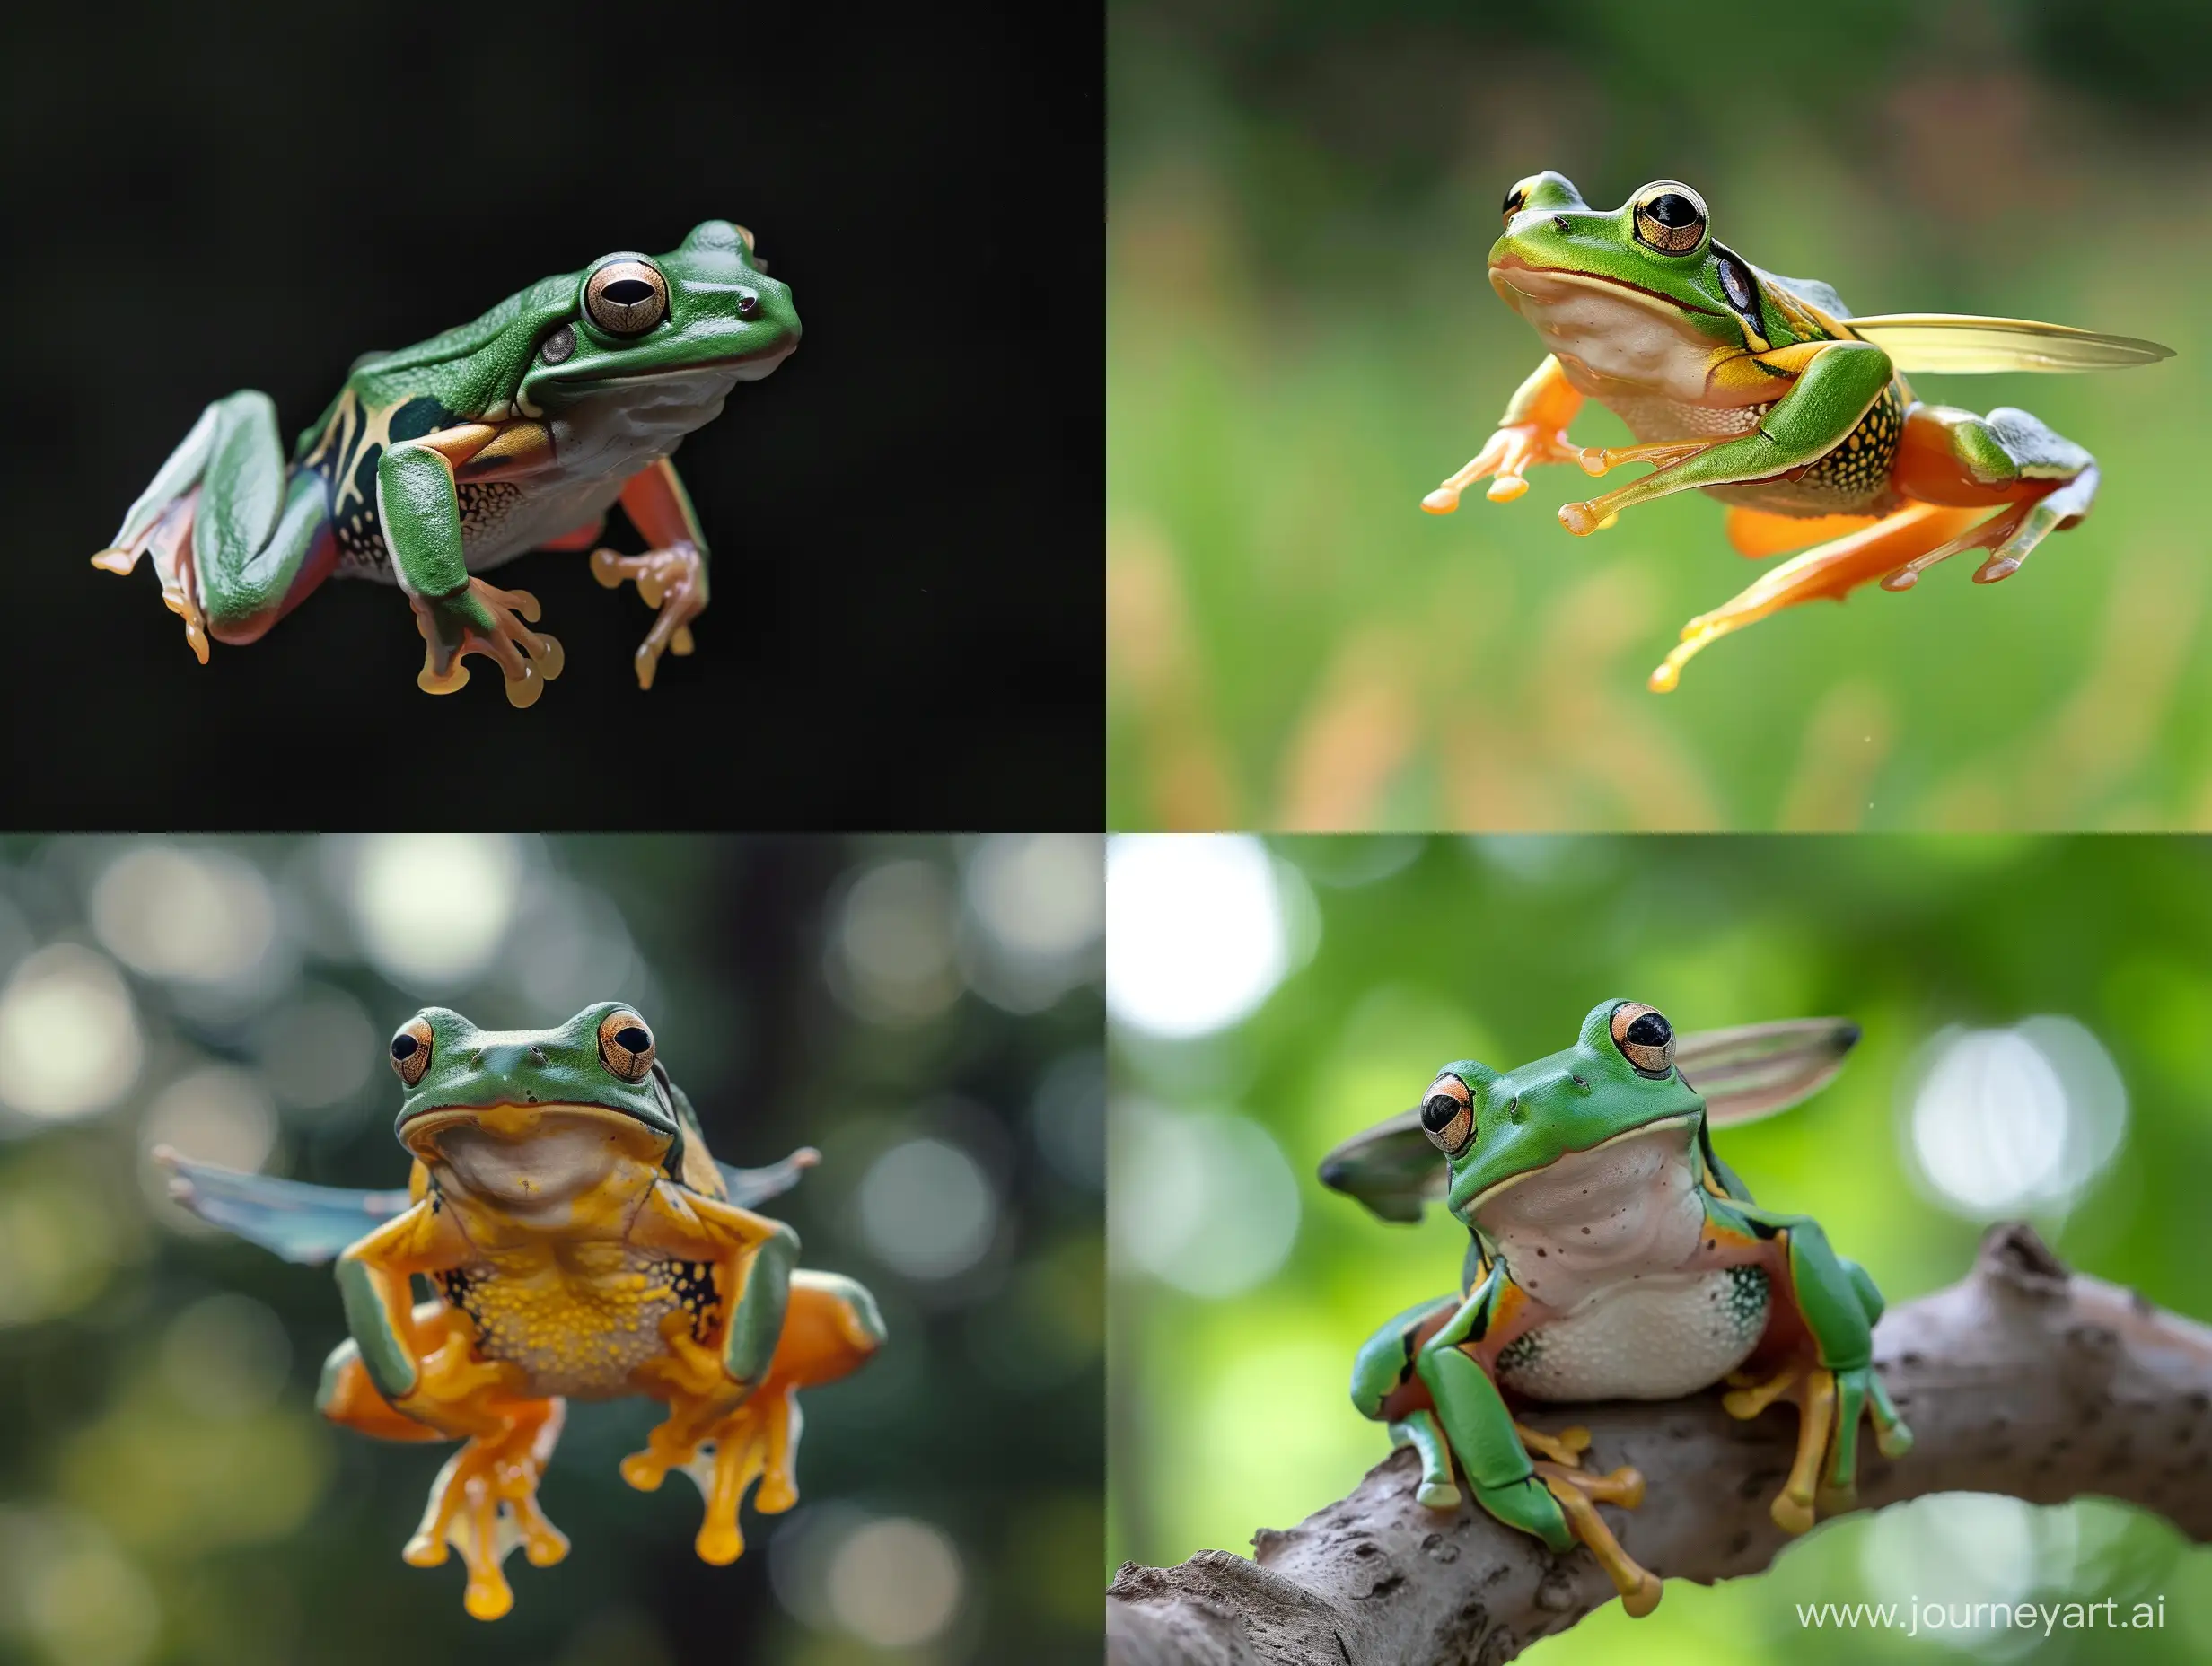 Frog, flying frog, tree frog